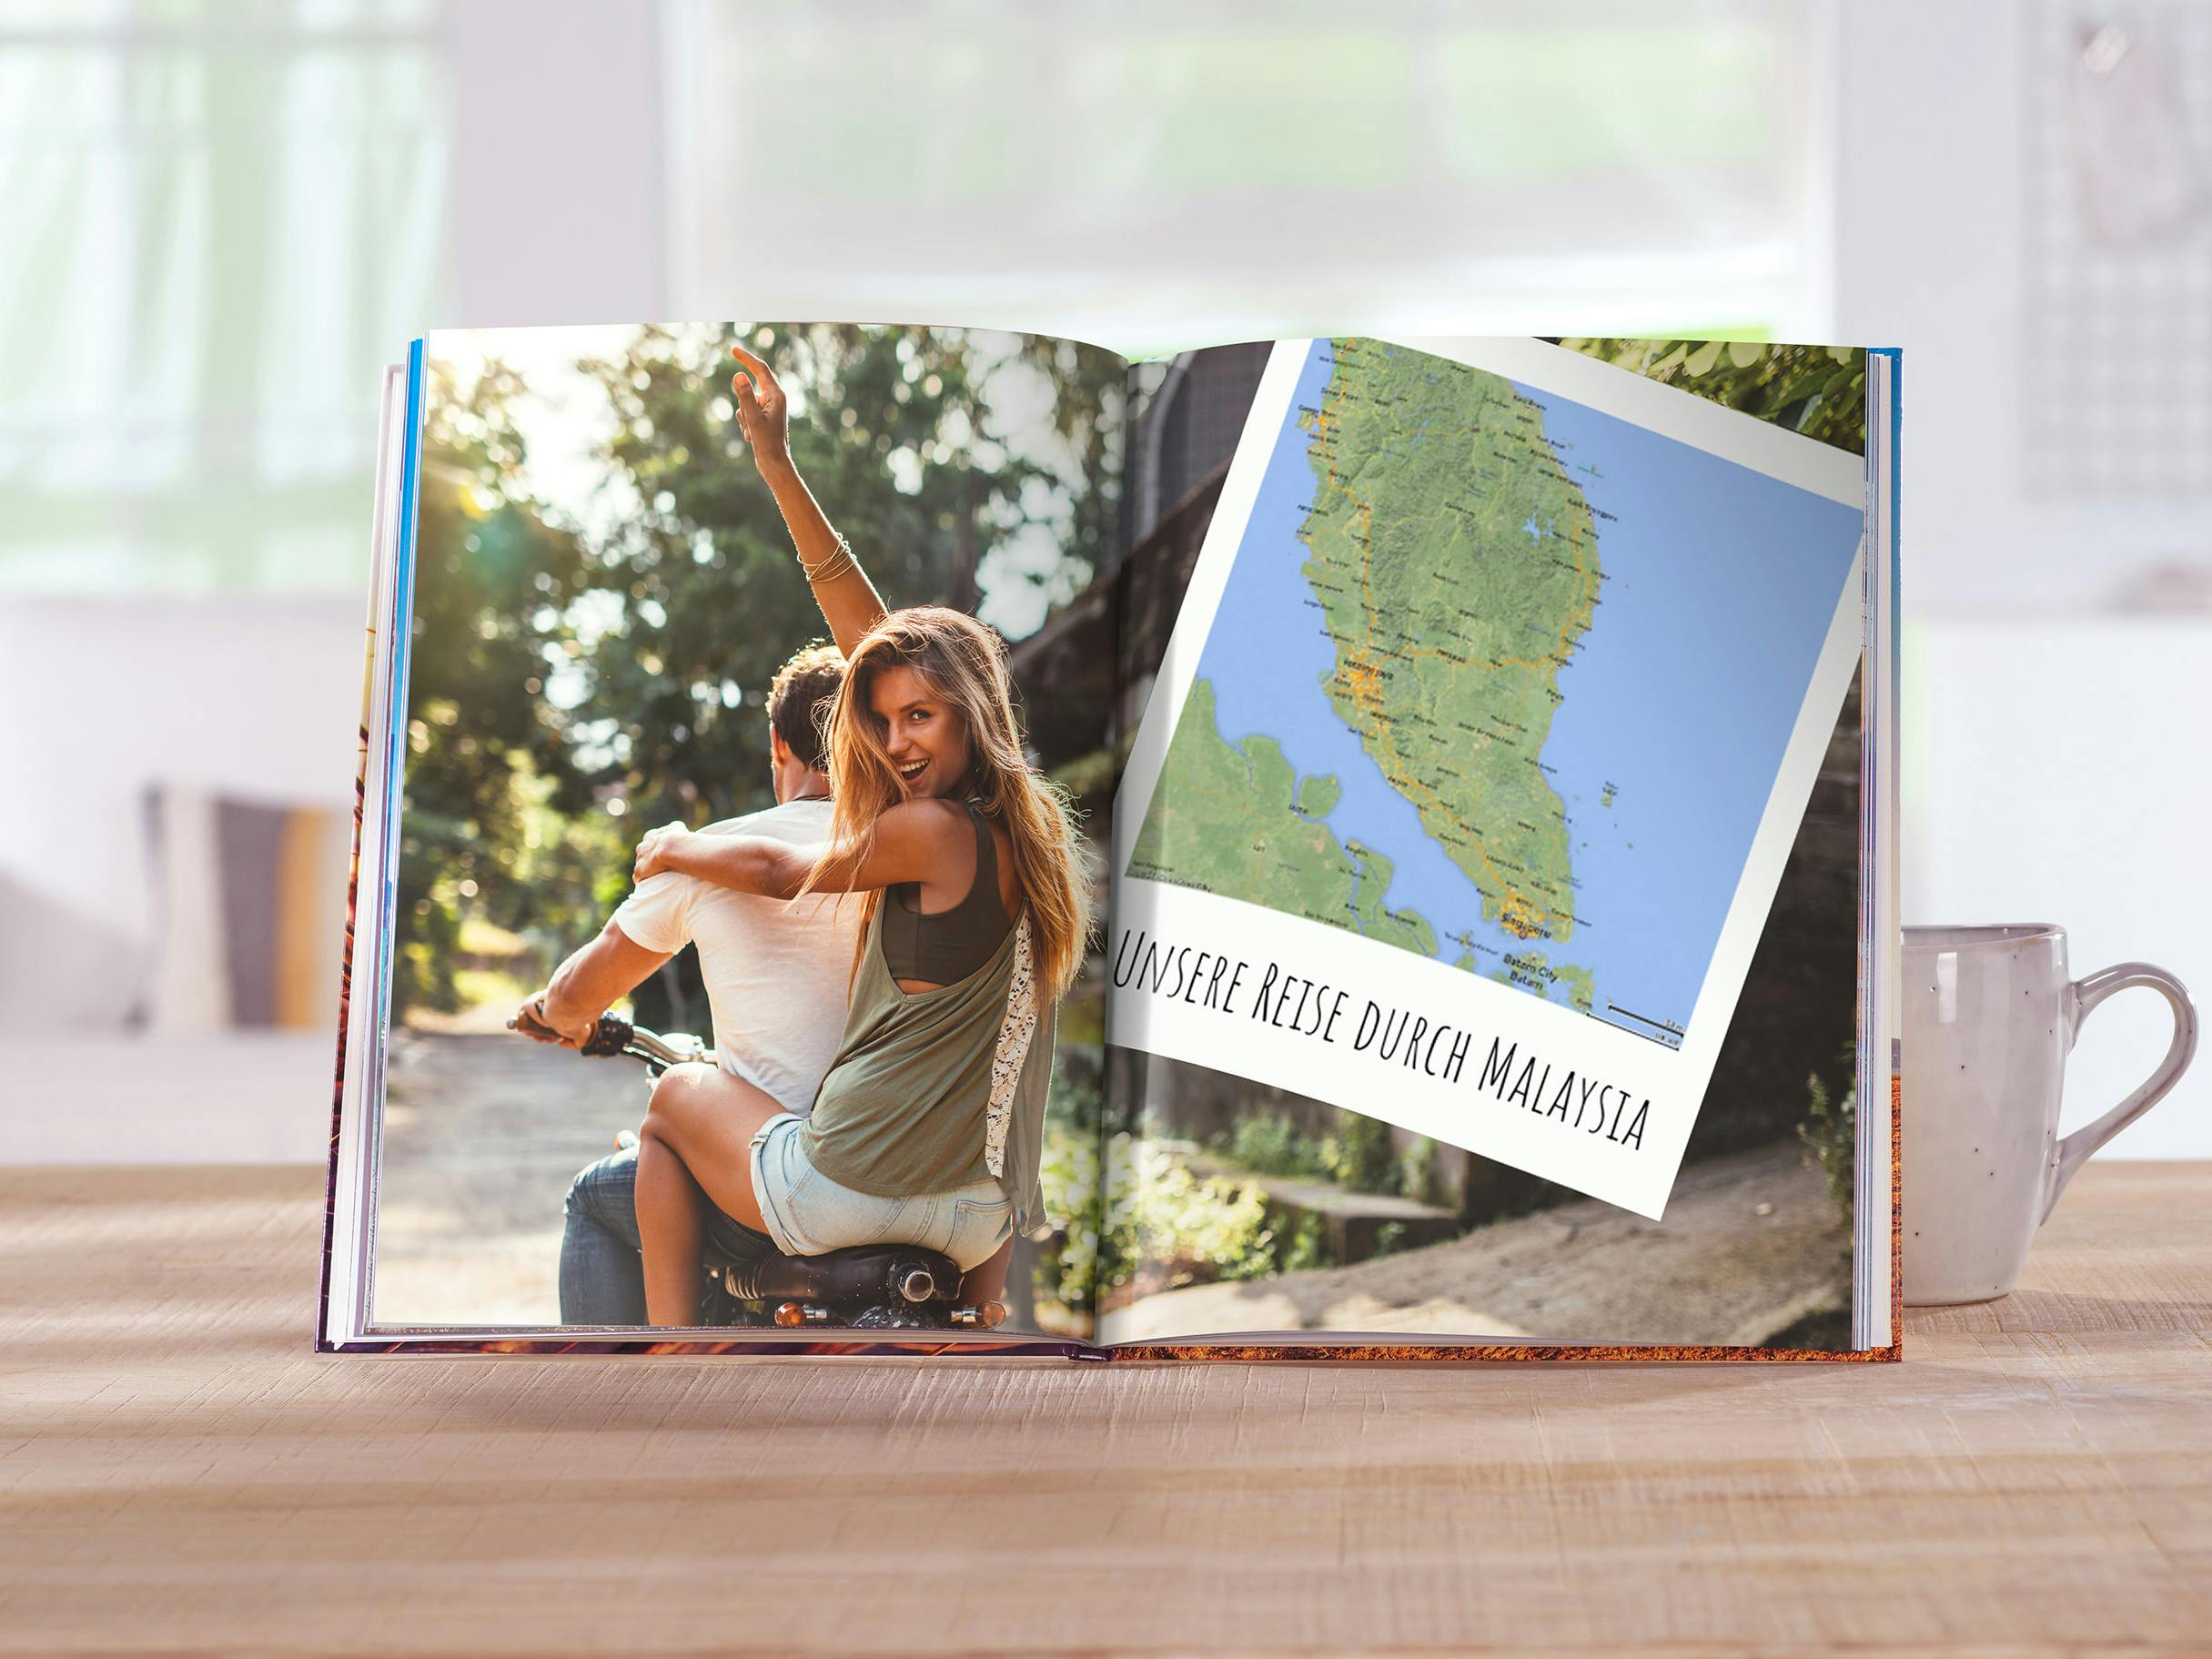 Fotobuch im Hochformat mit Motiv einer jungen Frau auf einem Motorrad und einer Landkarte im Buch